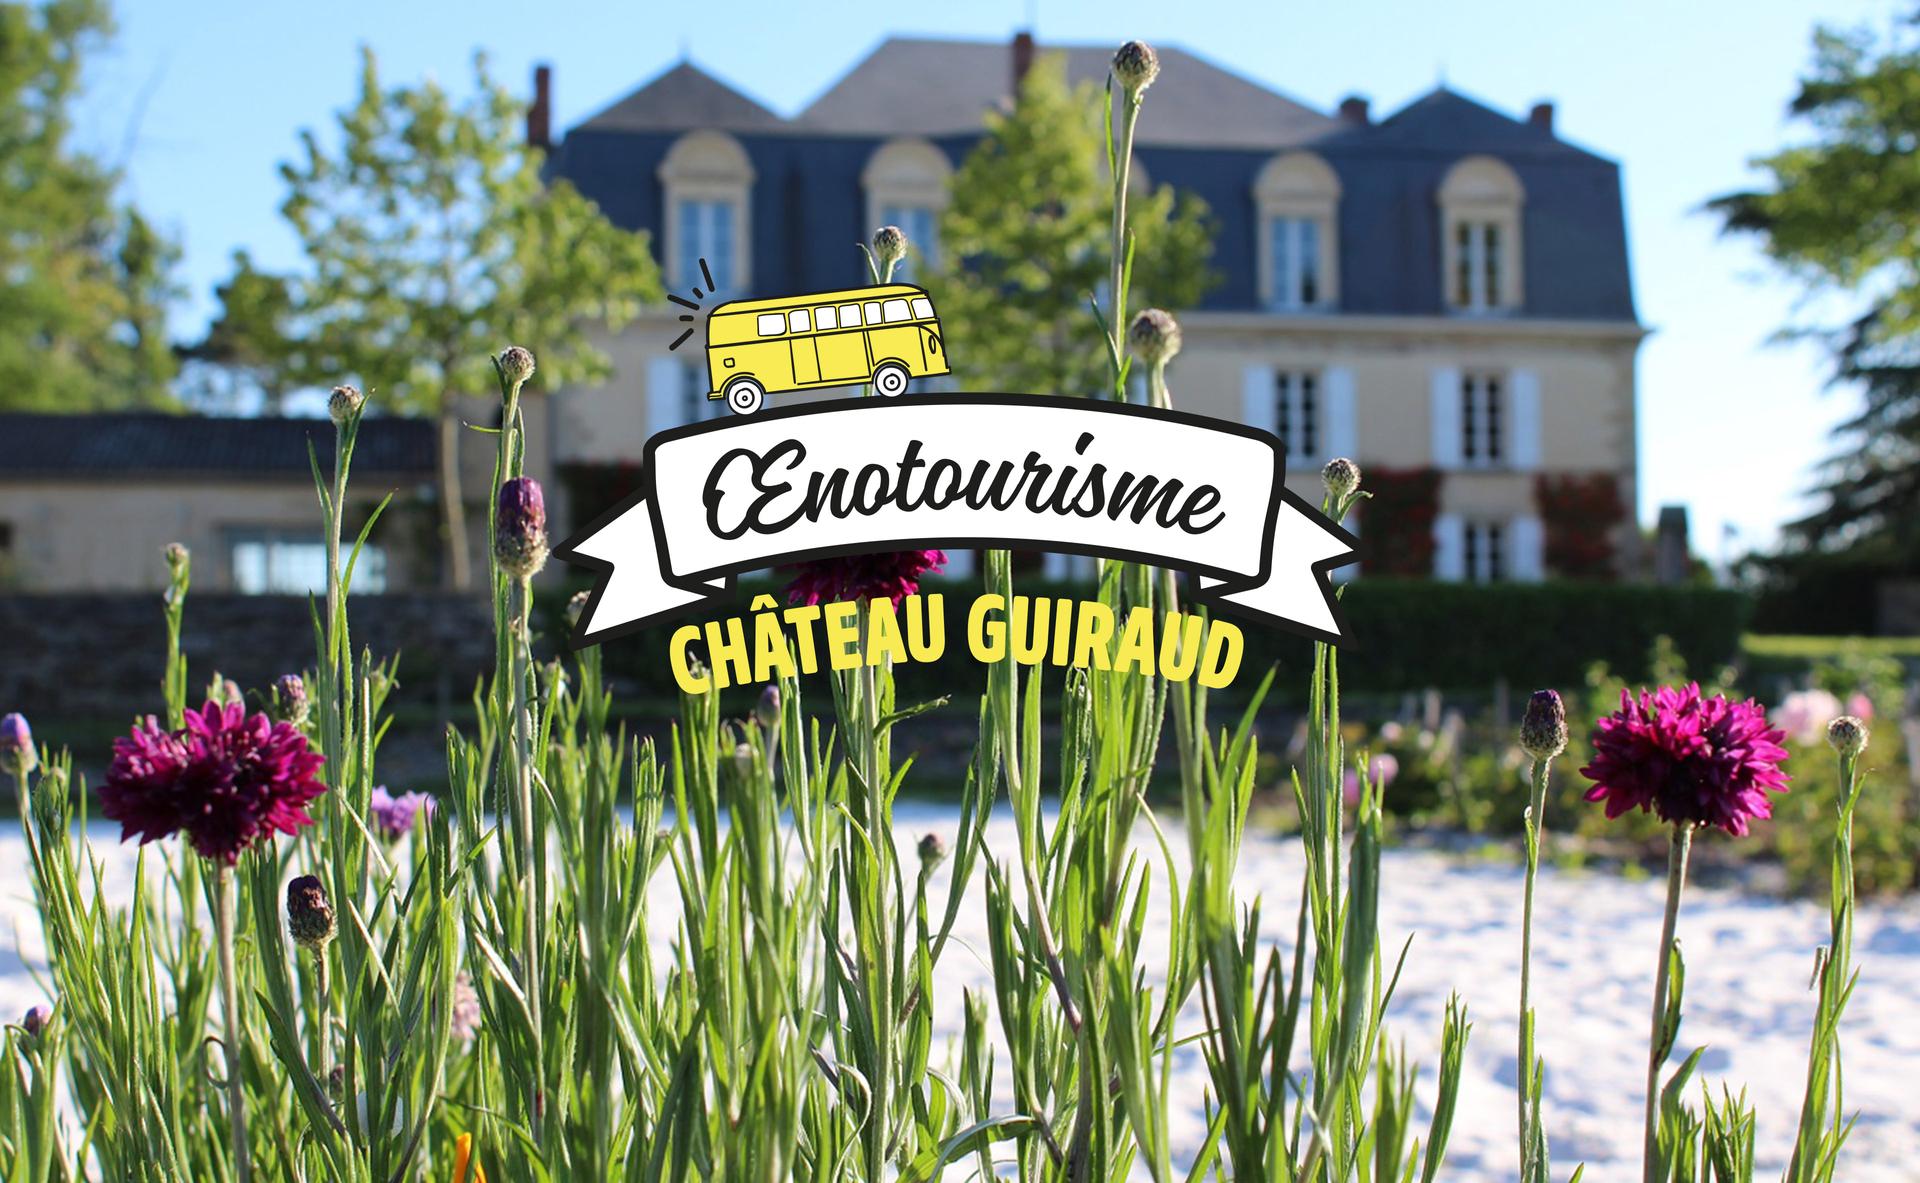 La bioviticulture au Château Guiraud